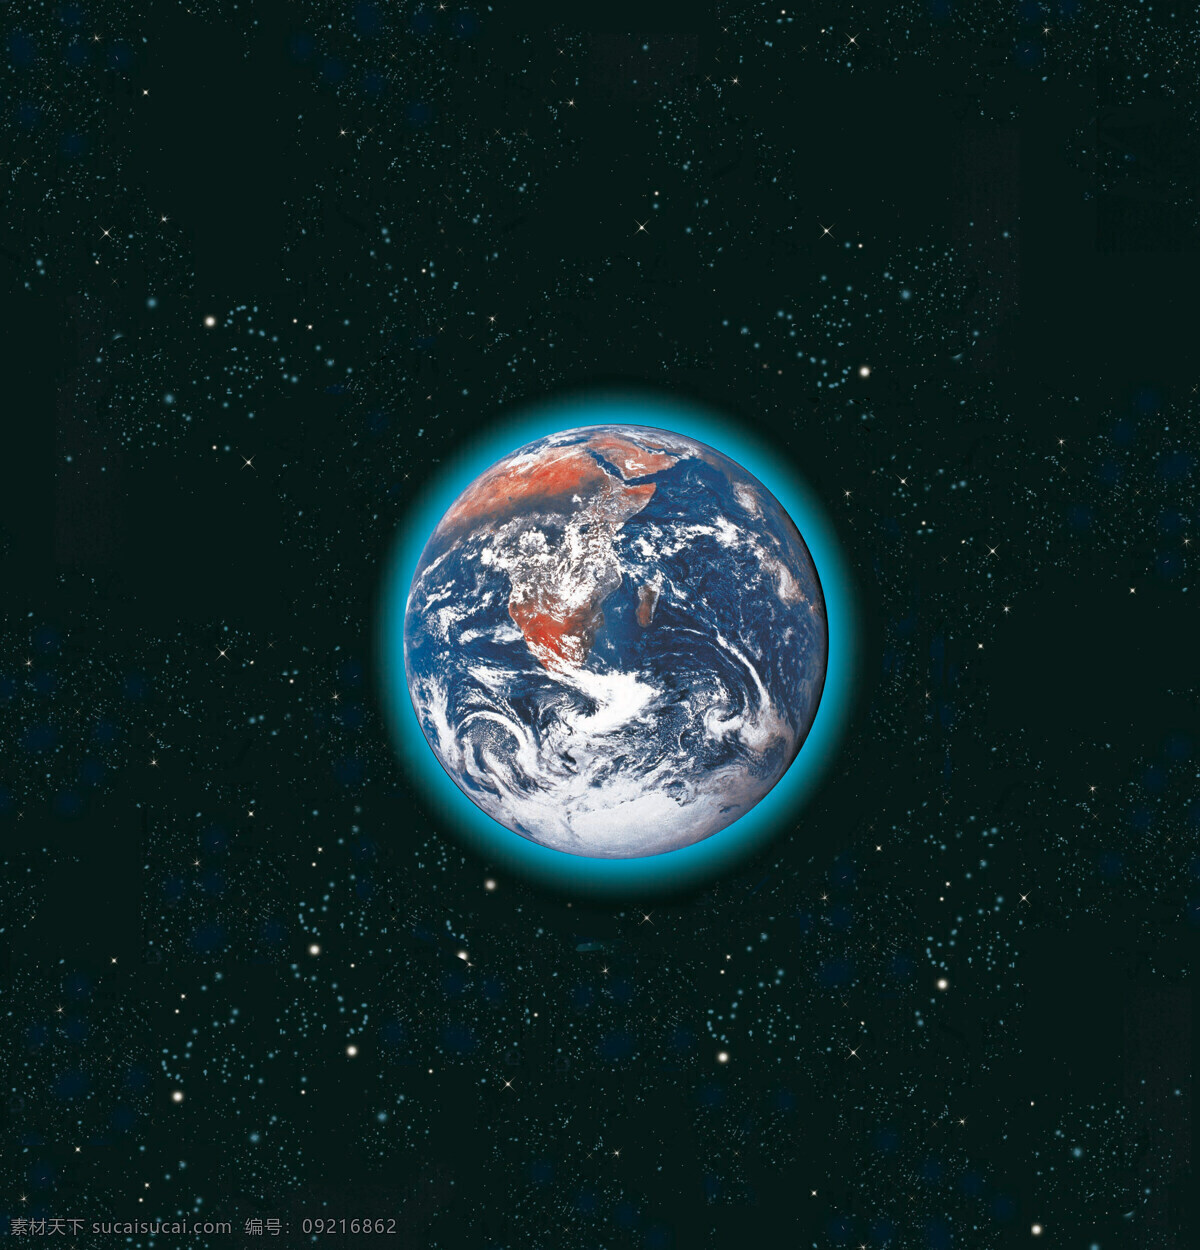 科技 科学 科学研究 设计图 设计图库 天文 现代科技 星球 行星 俯视 地球 天体 宇宙 星球世界 矢量图